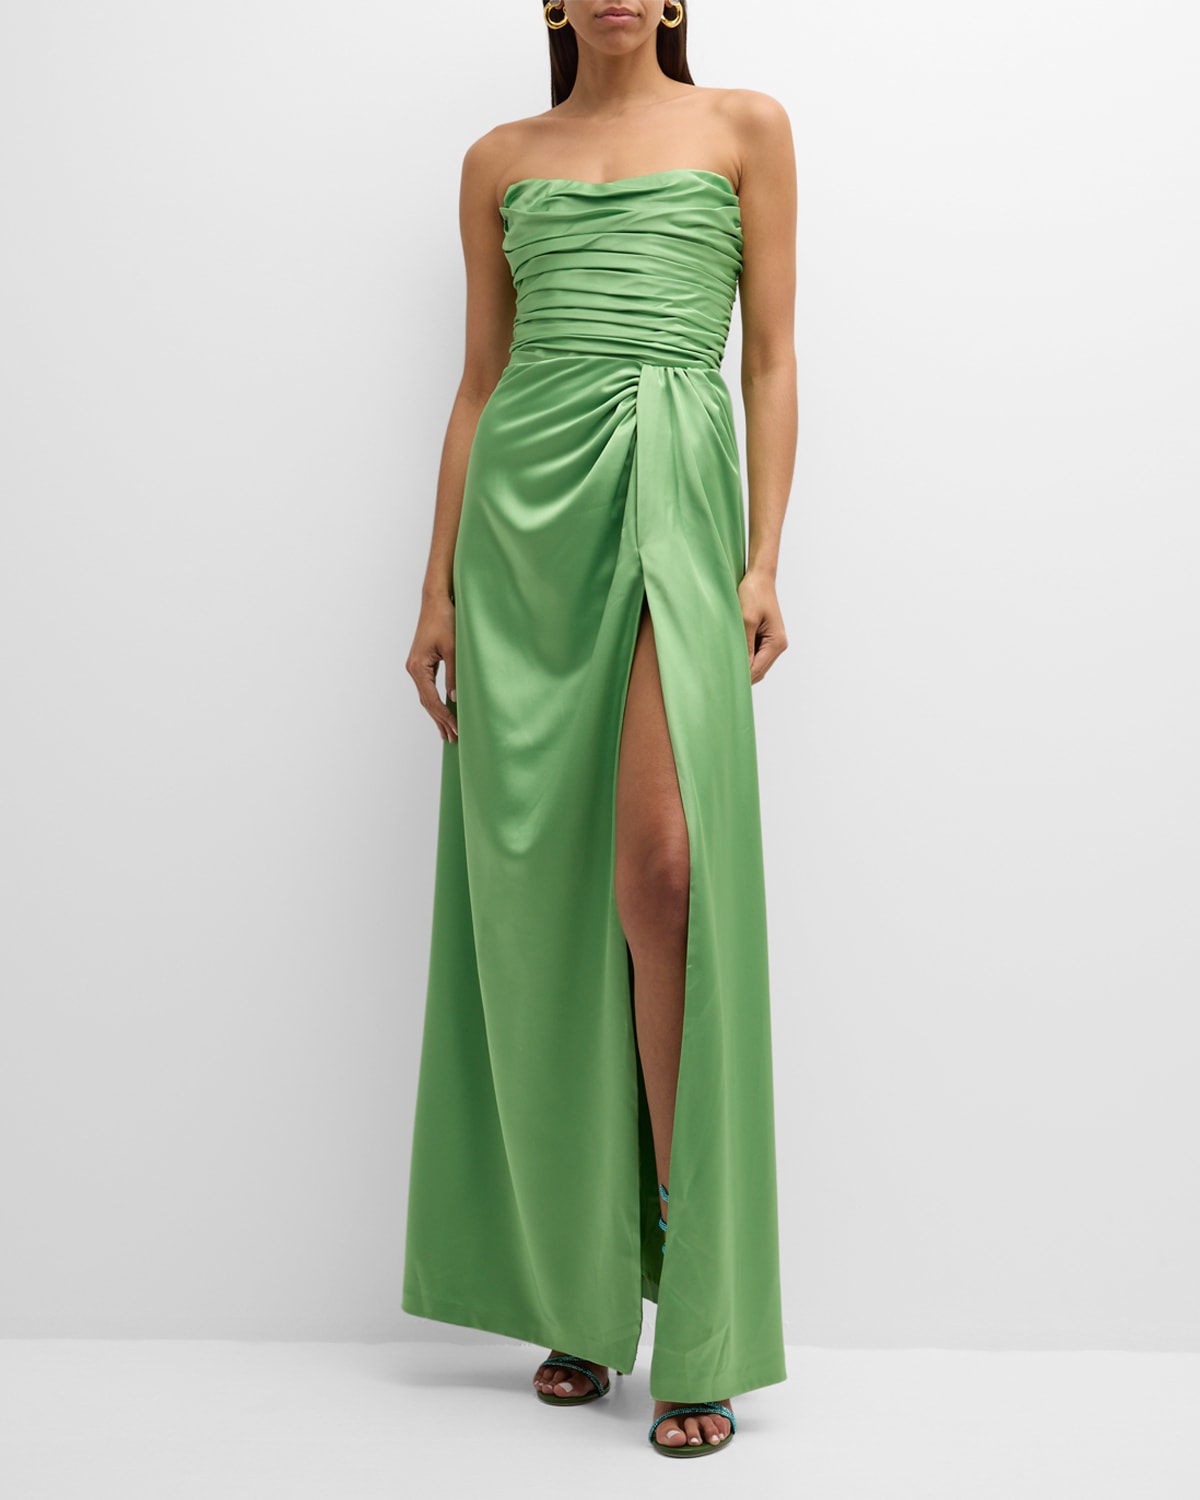 Gigii's Fella Strapless Pleated Side-slit Gown In Kaktus Green Kg24